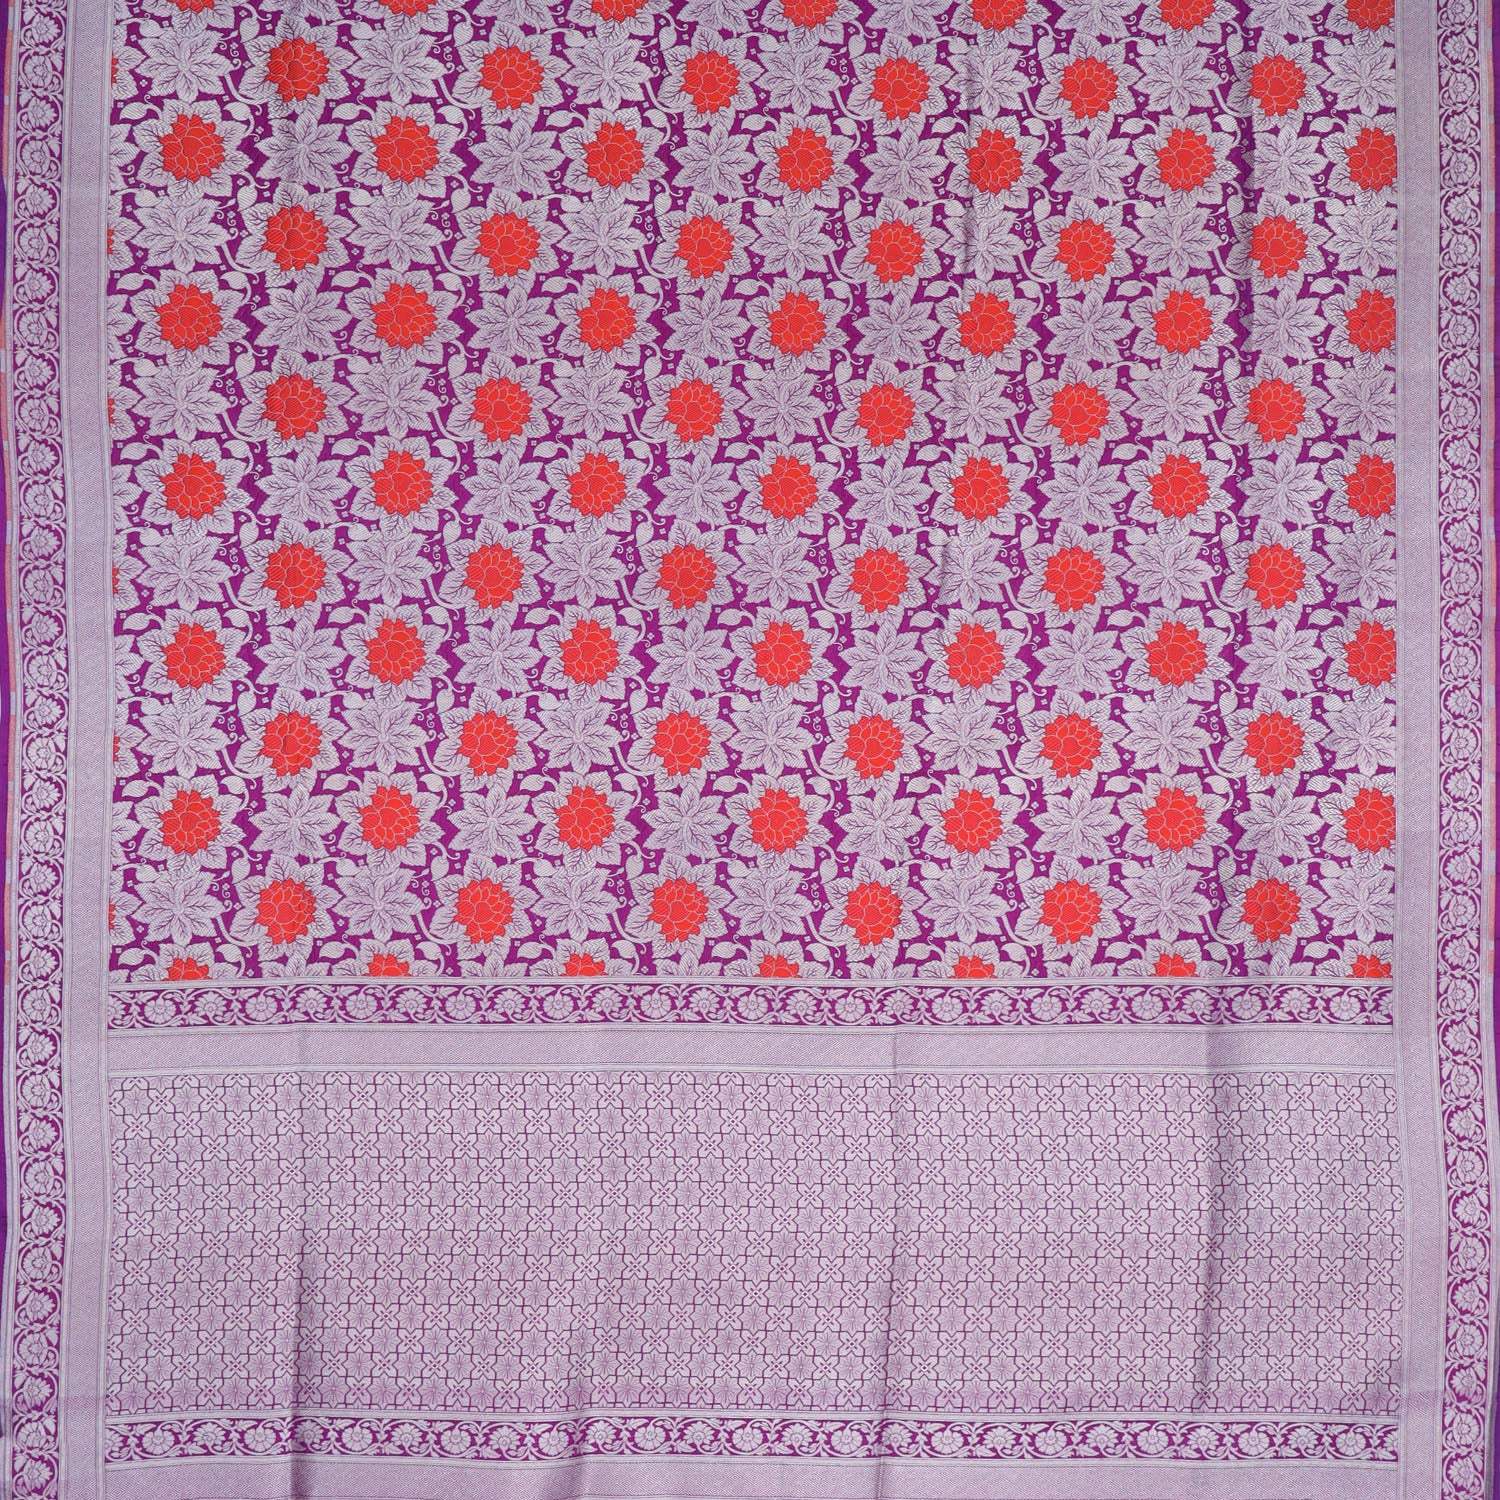 Deep Pink Banarasi Silk Handloom Saree With Floral Motif Pattern - Singhania's